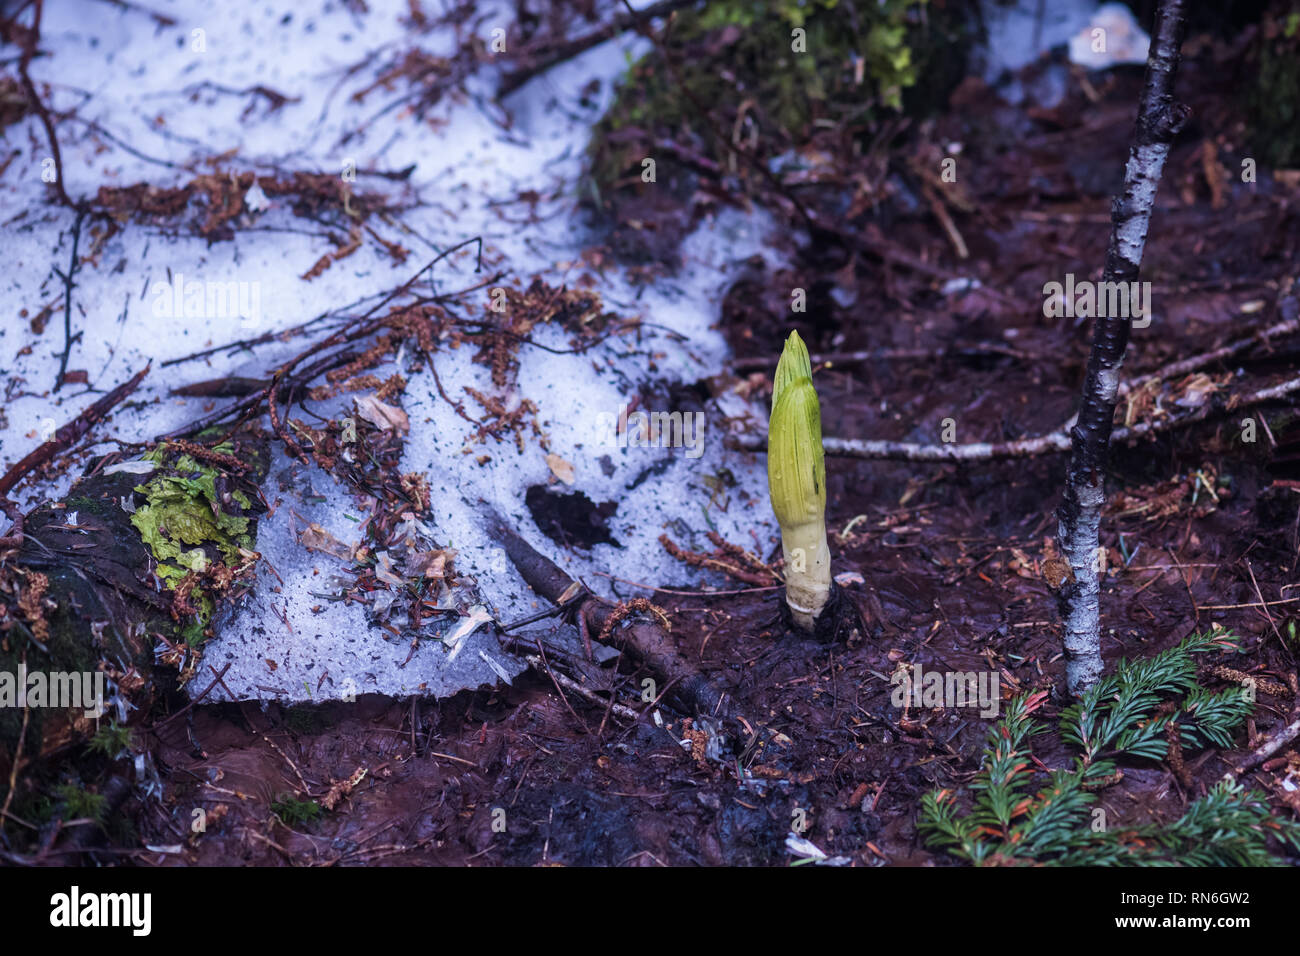 La germogliazione di asiatici di Skunk cavolo (Lysichiton camtschatcensis). È emerge accanto alla neve residua. Tsugaike, Hakuba, Nagano, Giappone. Foto Stock